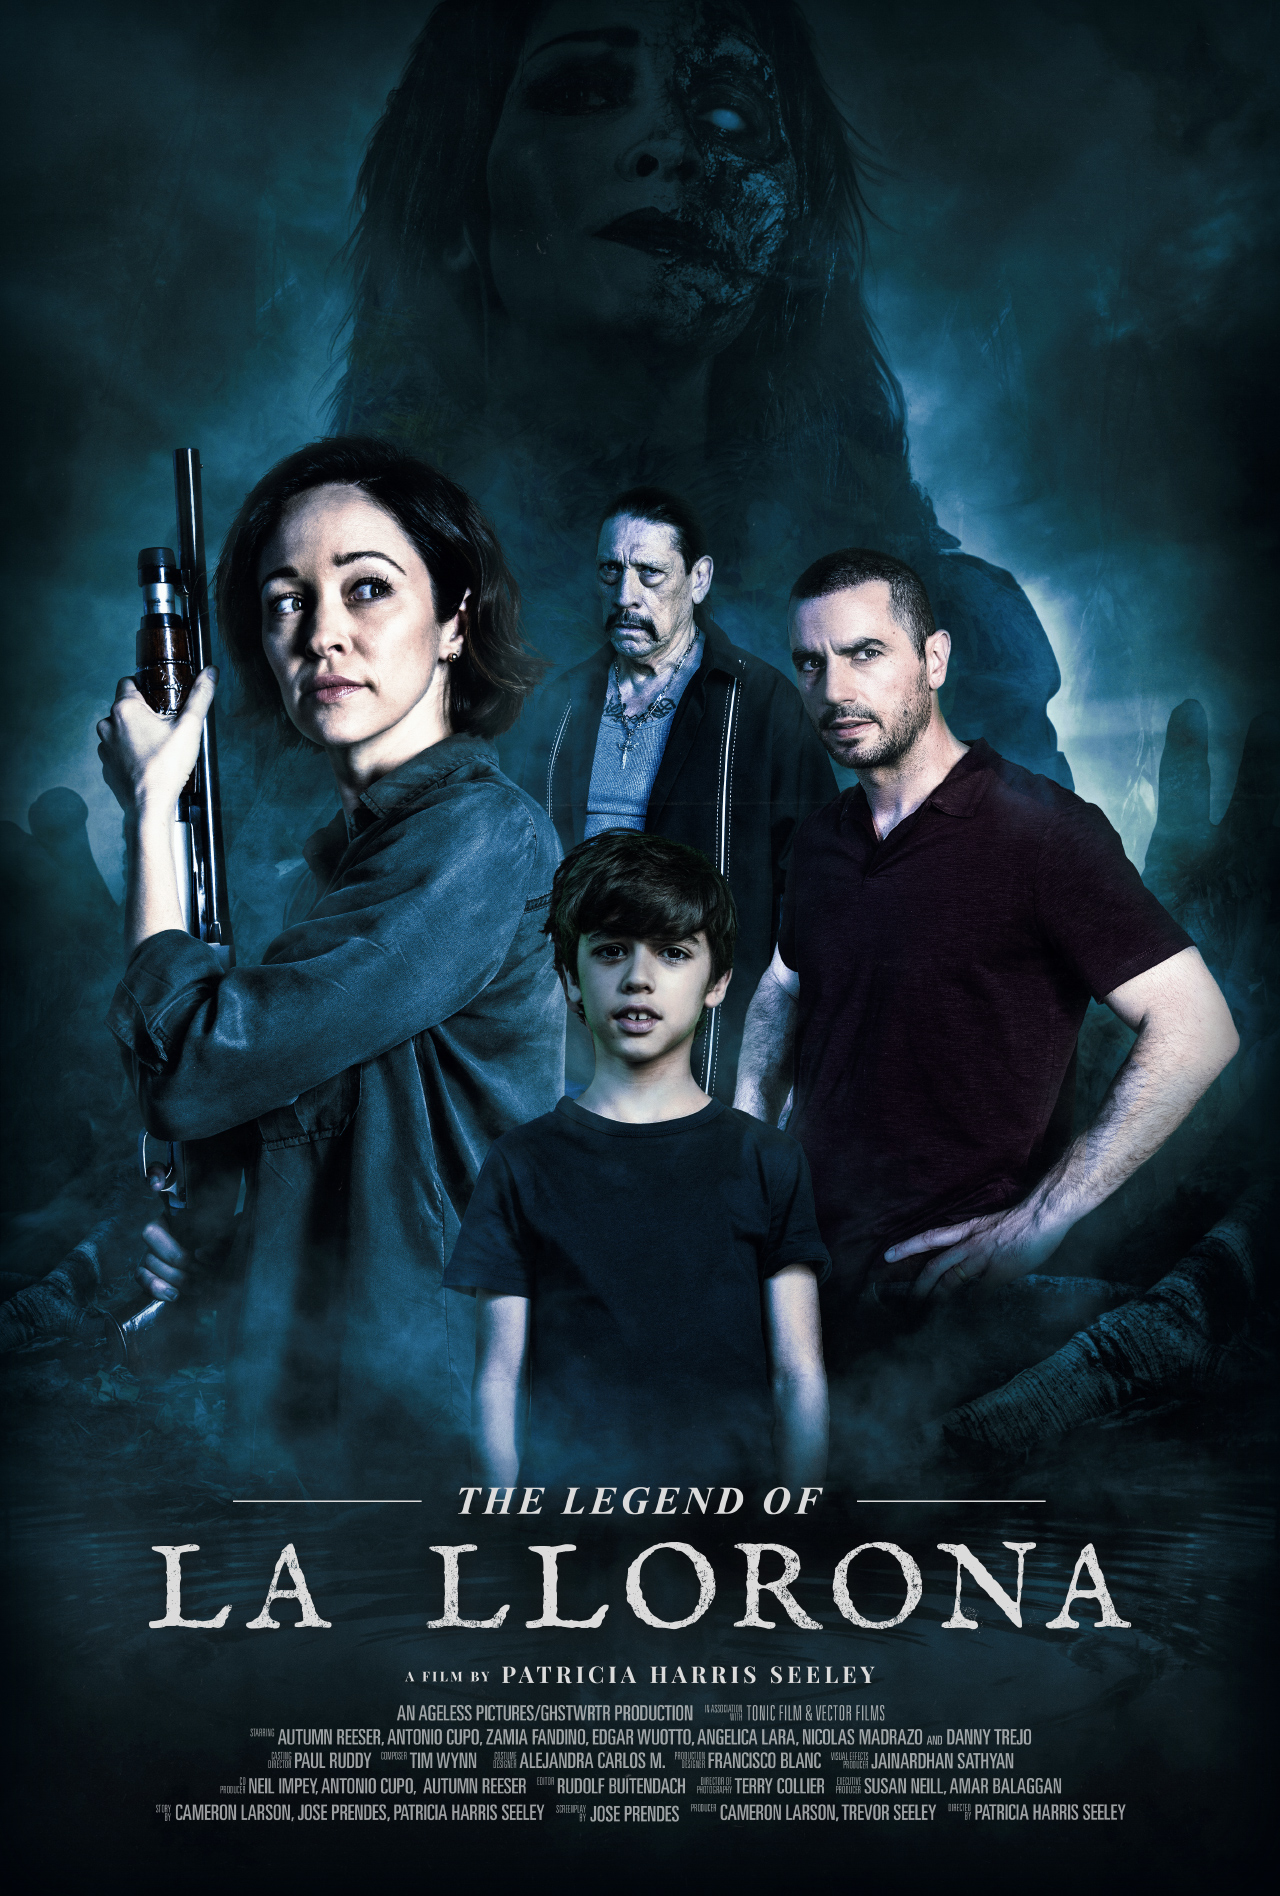 A-Chorona-volta-ao-cinema-em-novo-filme-baseado-na-lenda-The-Legend-of-La-Llorona-posters-trilhadomedo-1